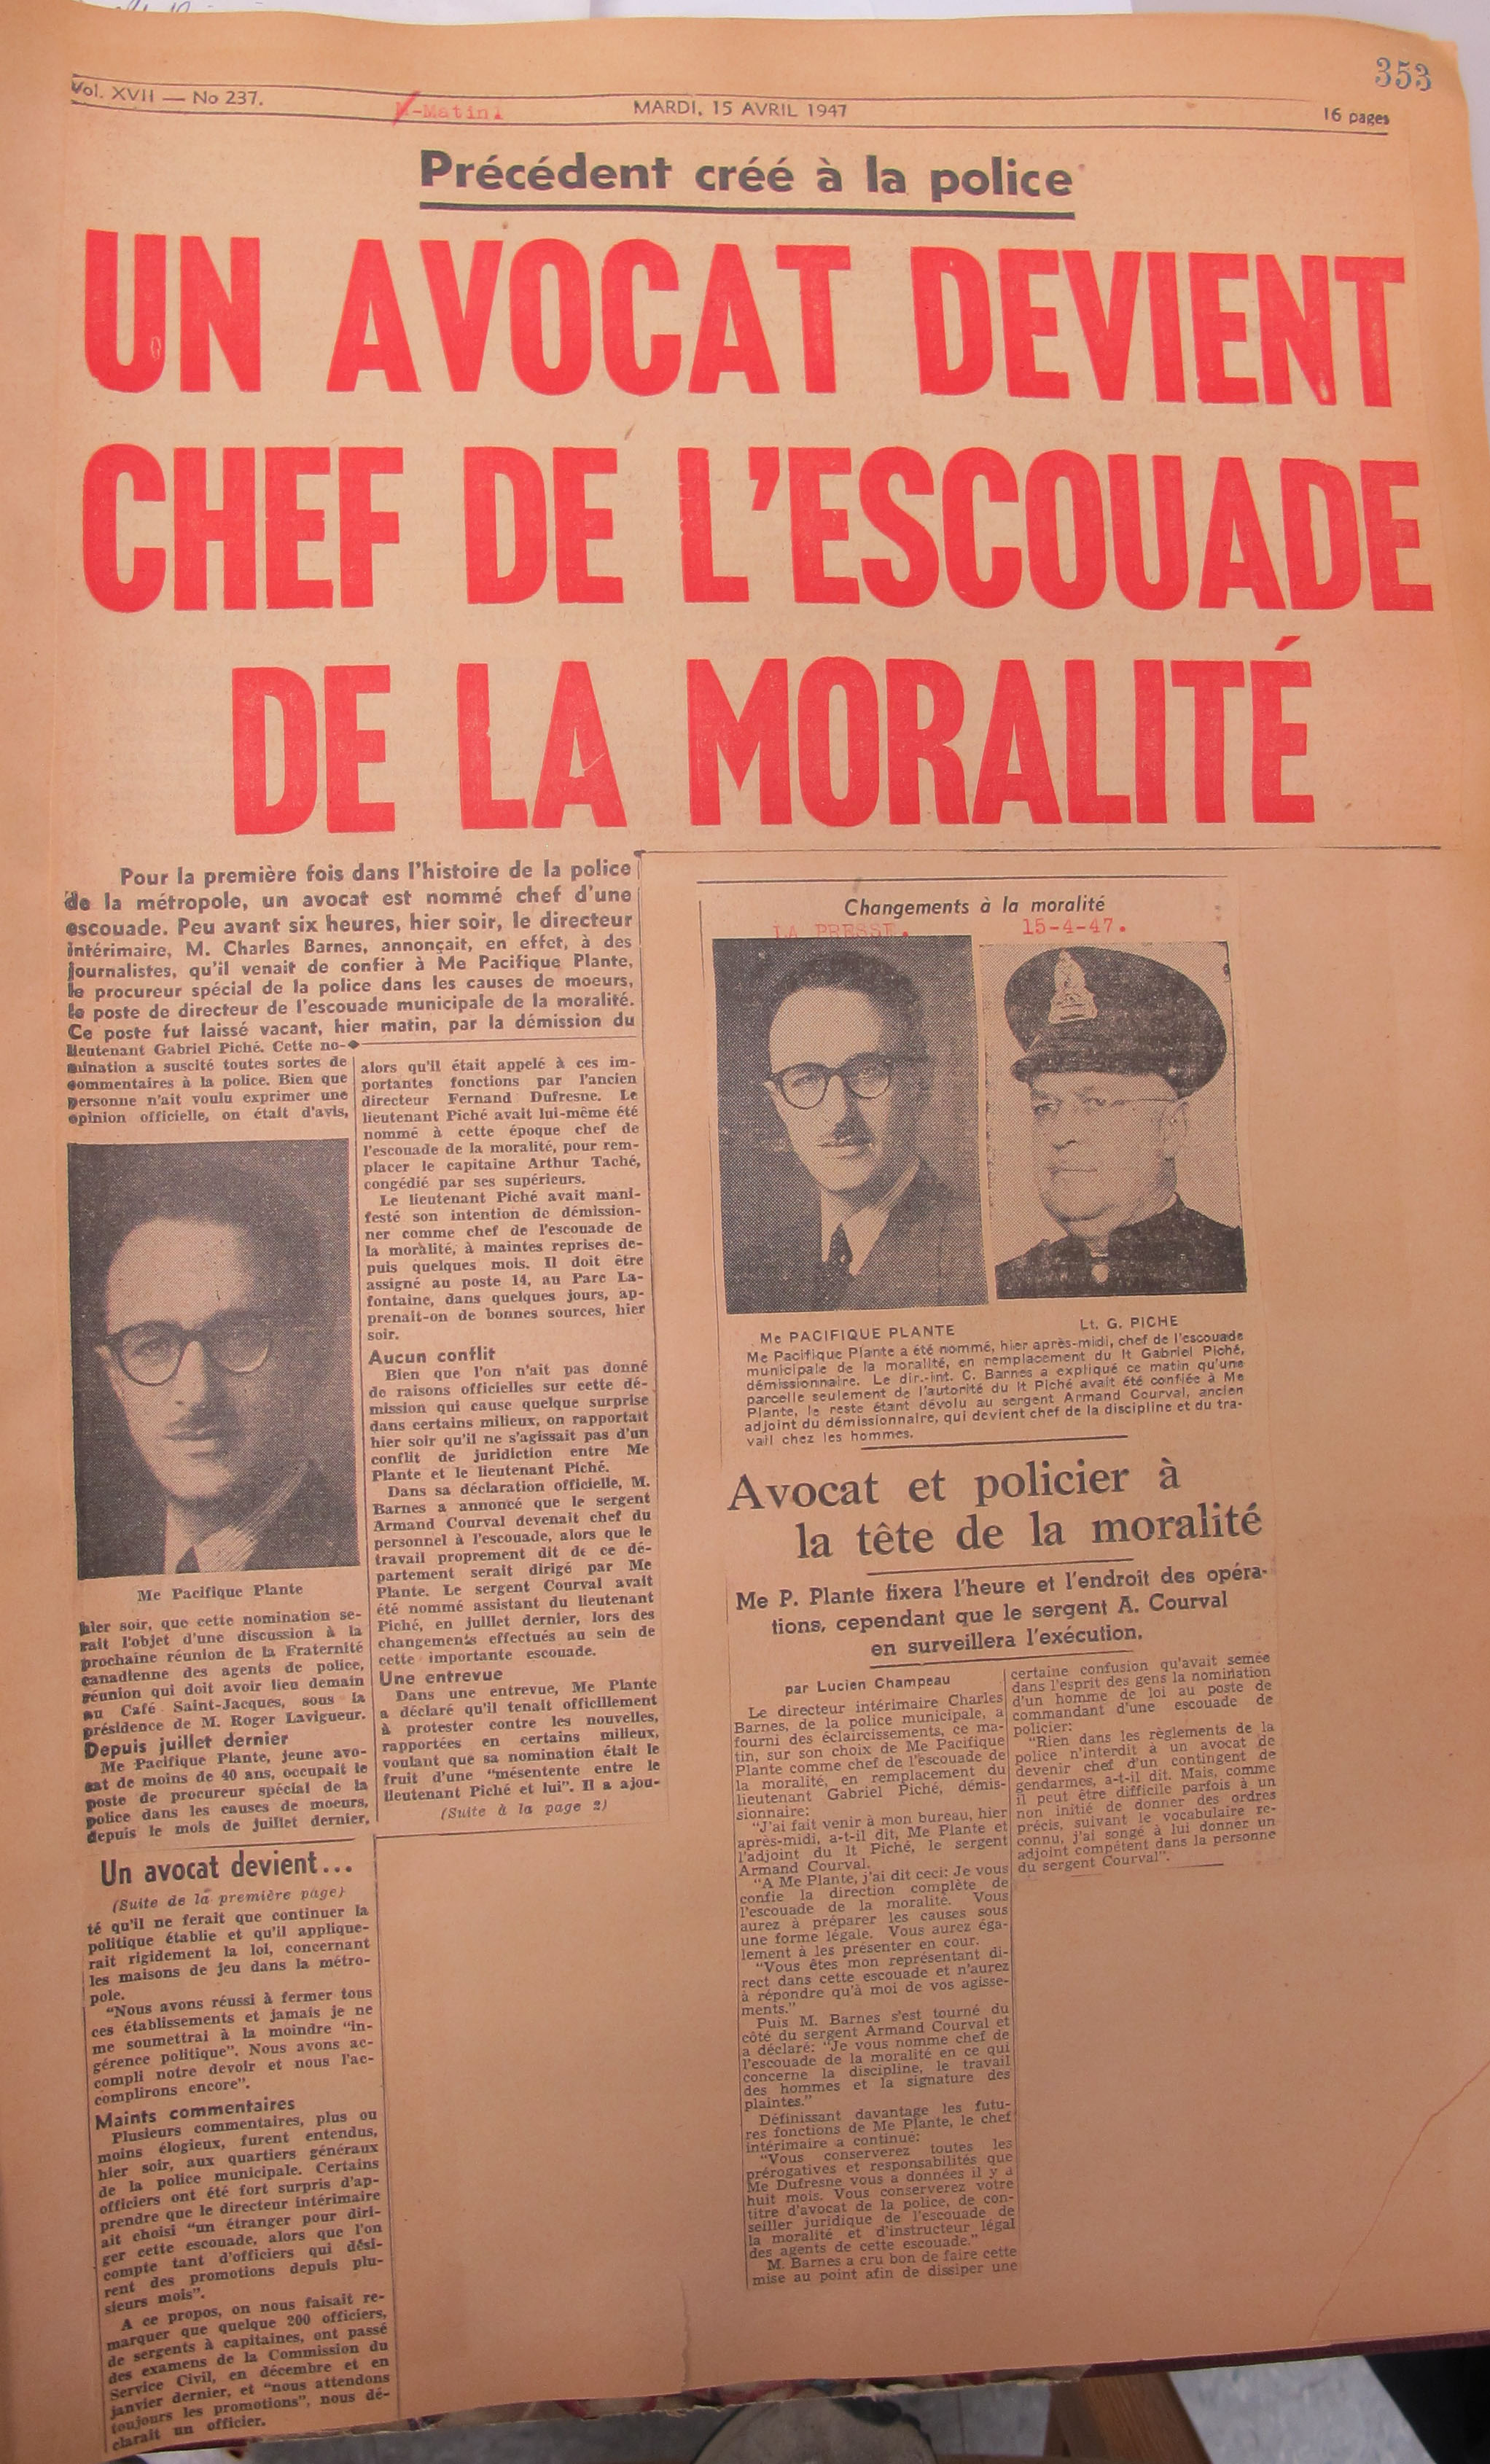 Coupure du journal Montréal Matin annonçant la nomination de Pacifique Plante comme chef de l'escouade de la moralité